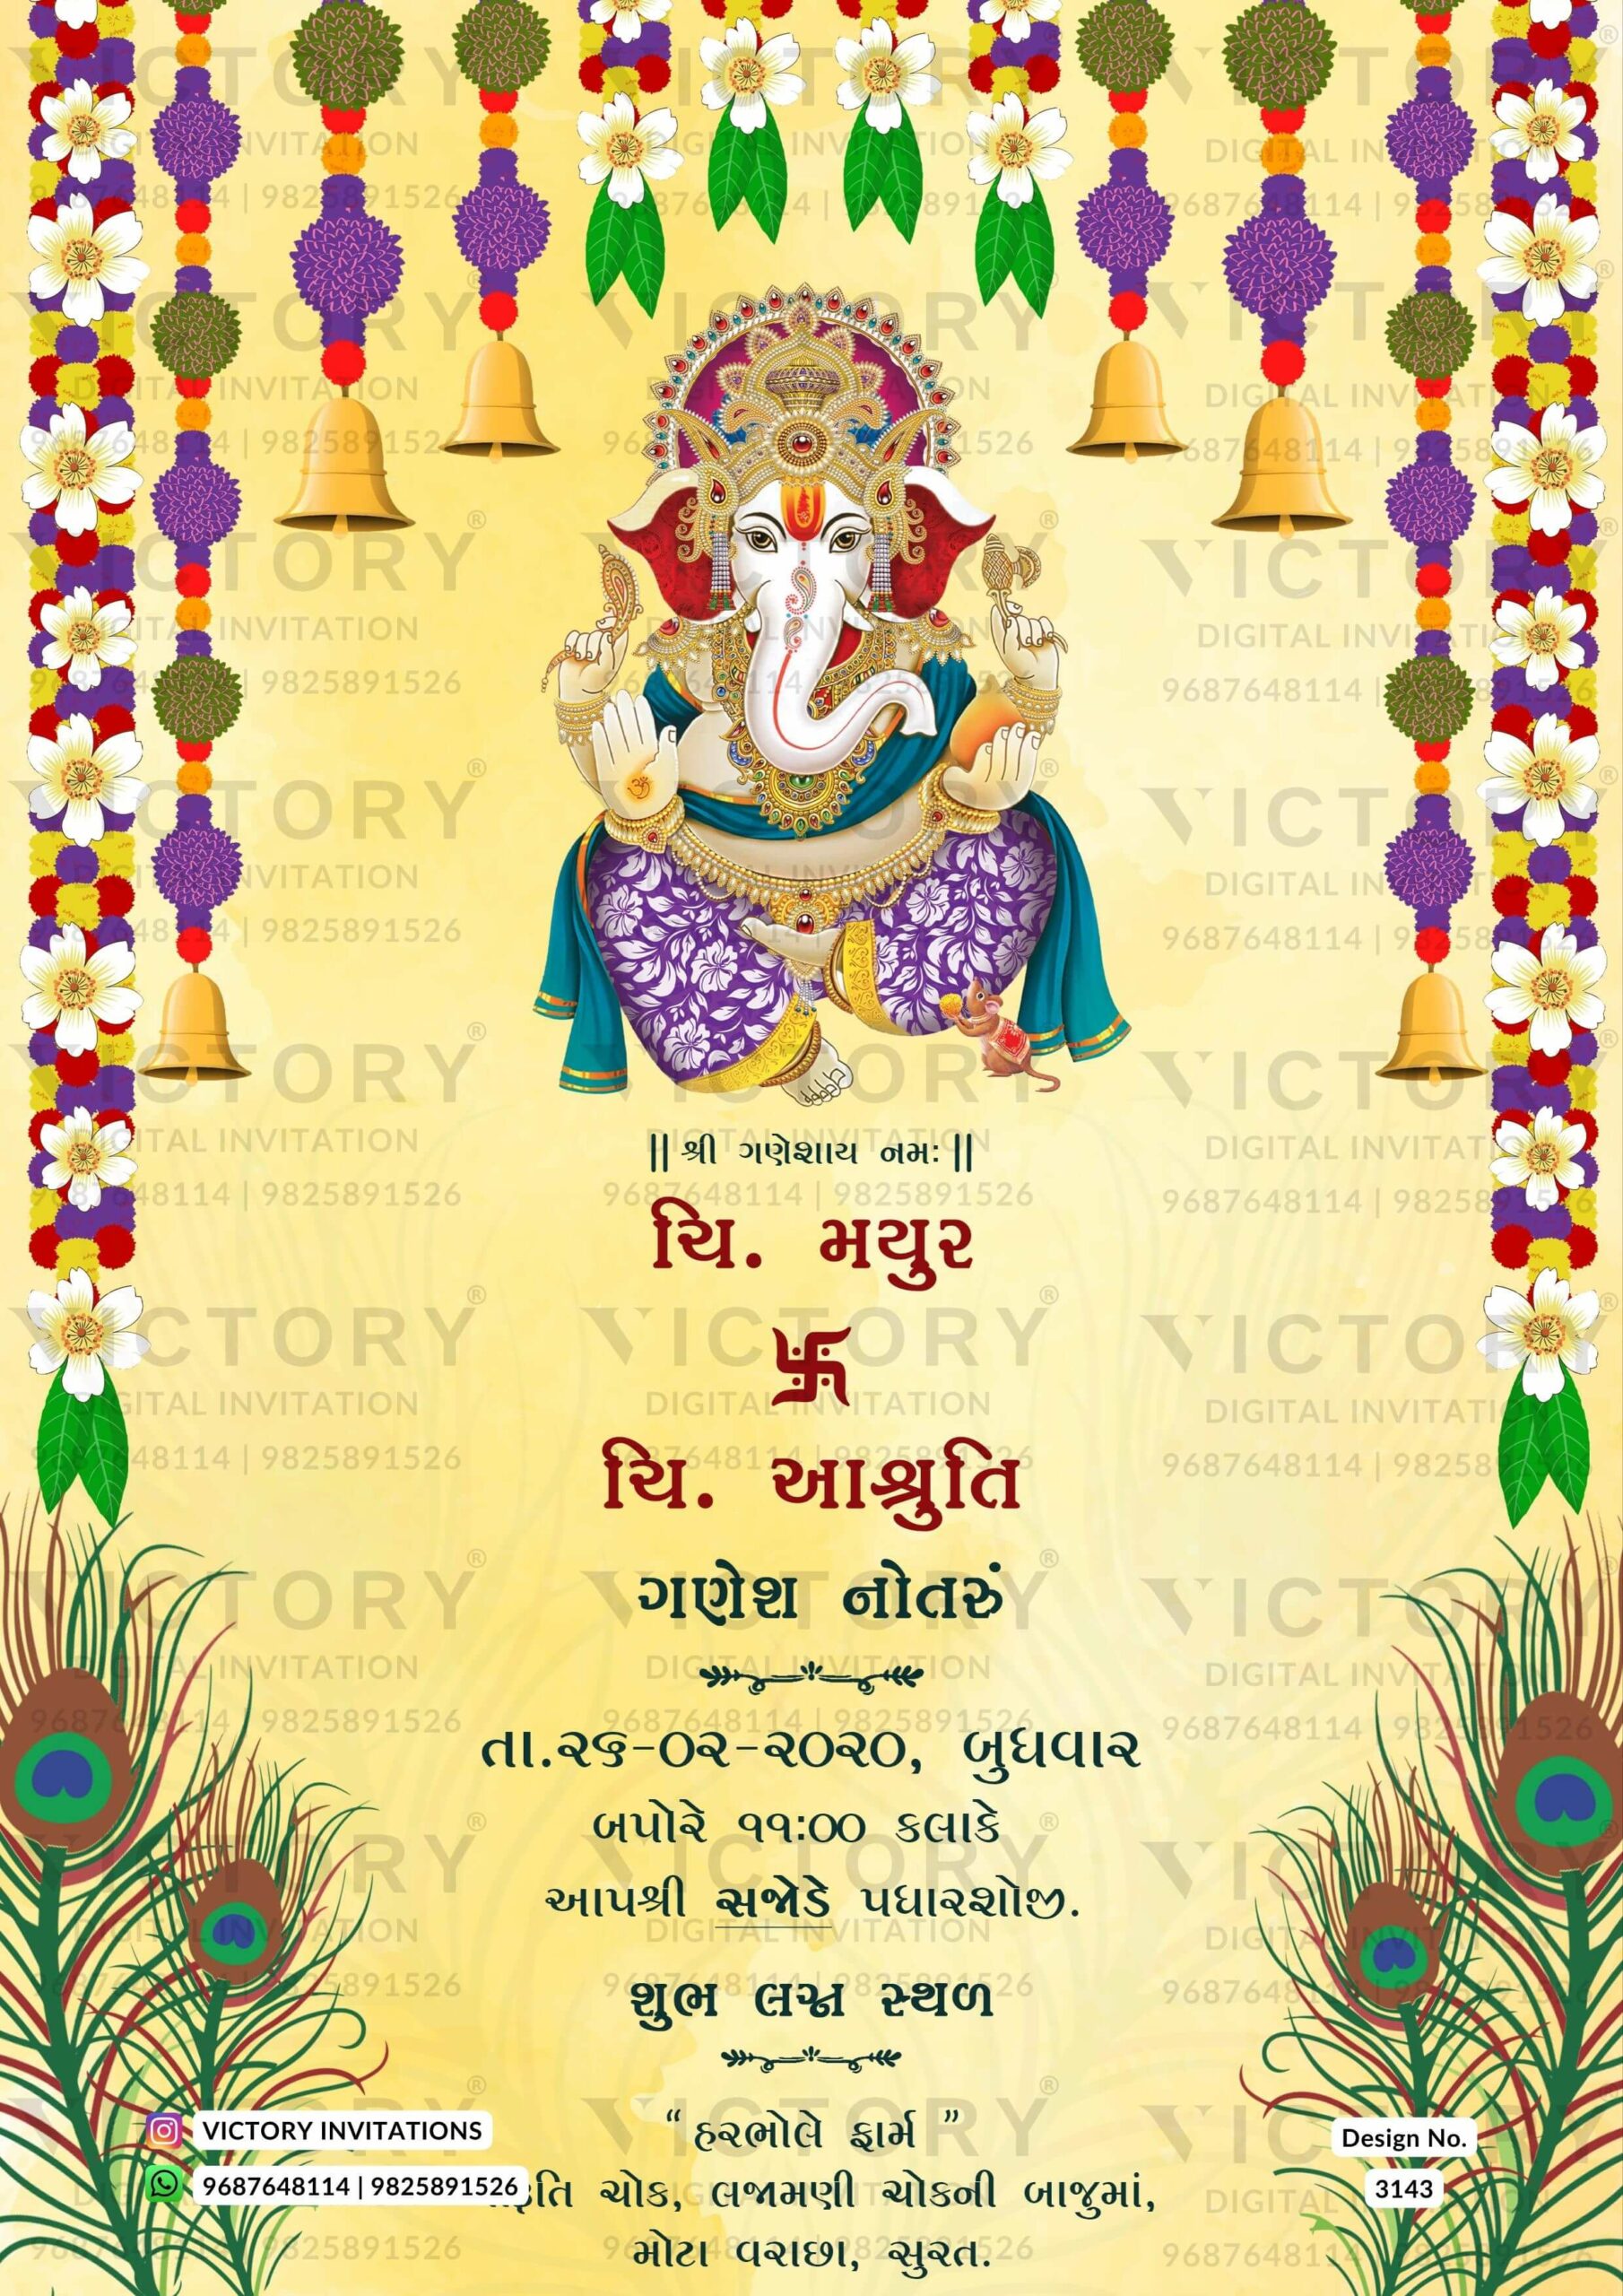 Ganesh Notaru no.3143